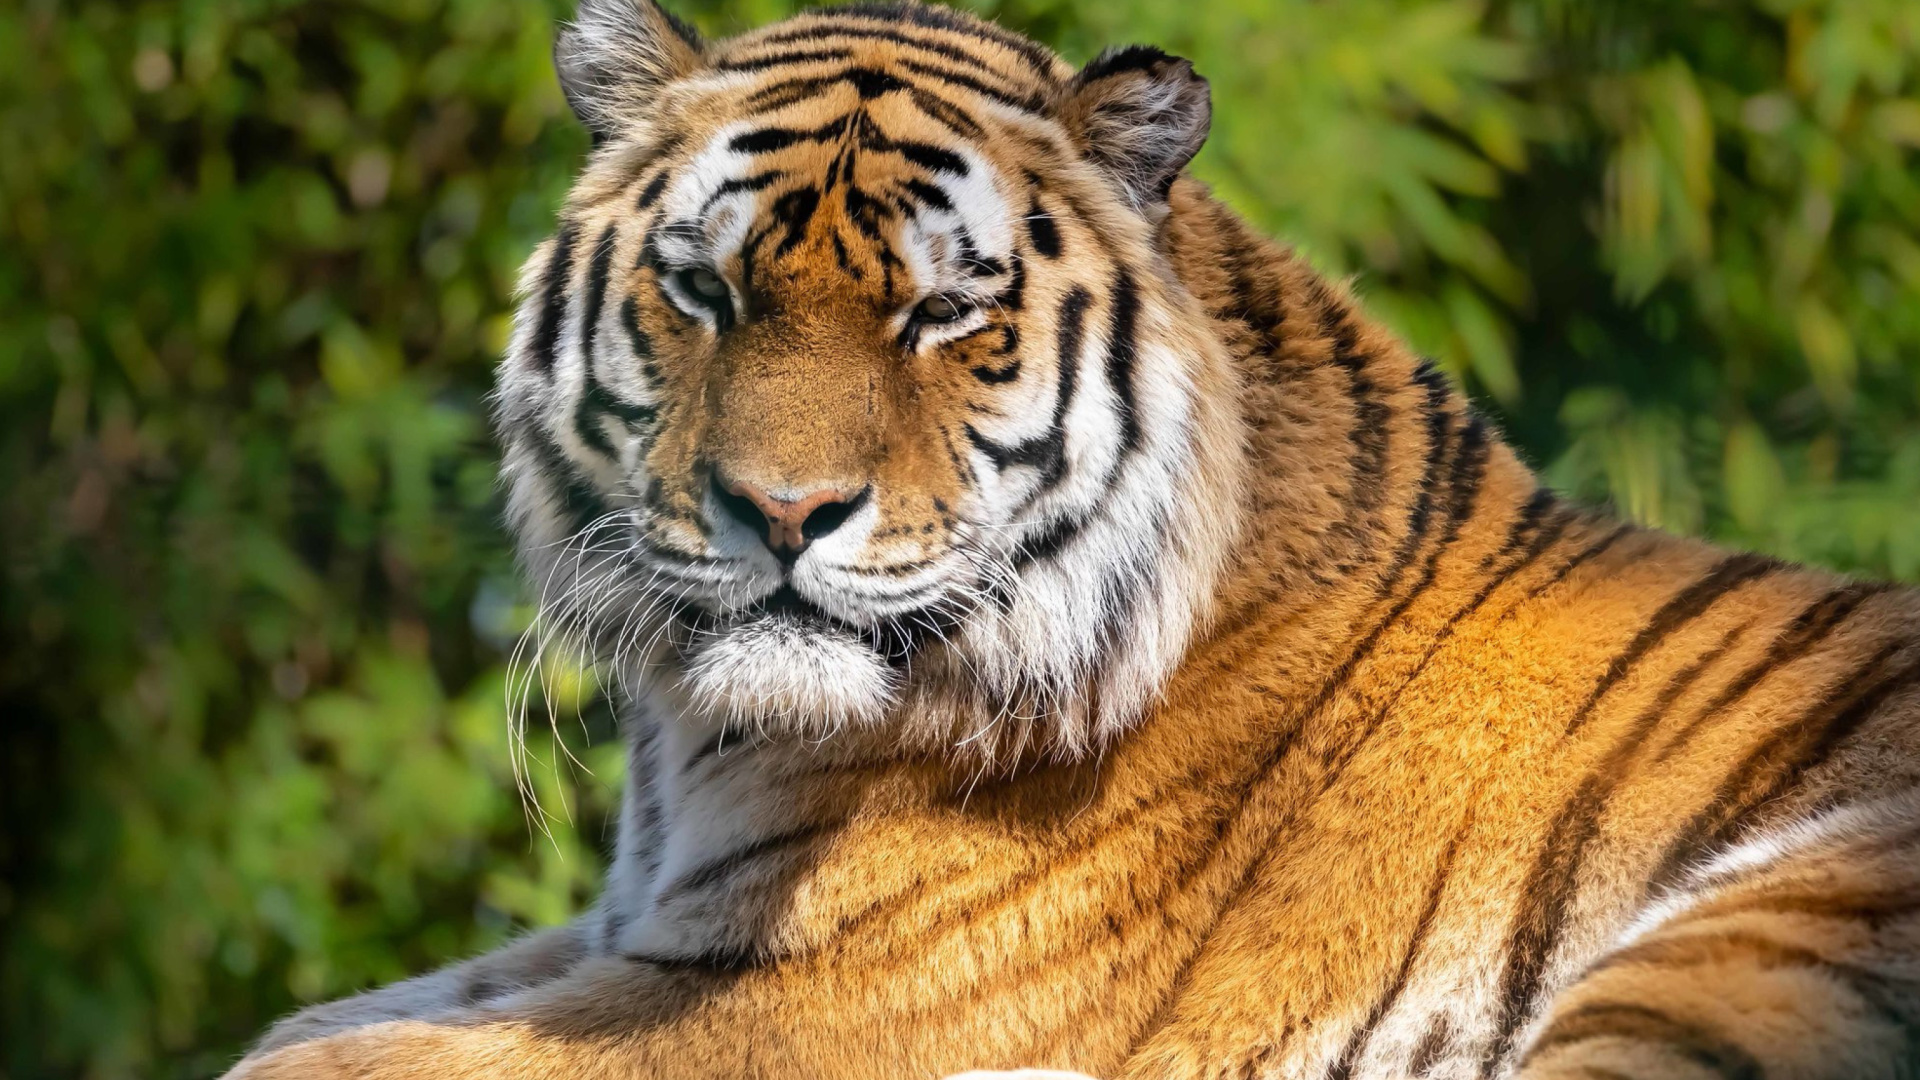 Malay Tiger at the New York Zoo screenshot #1 1920x1080